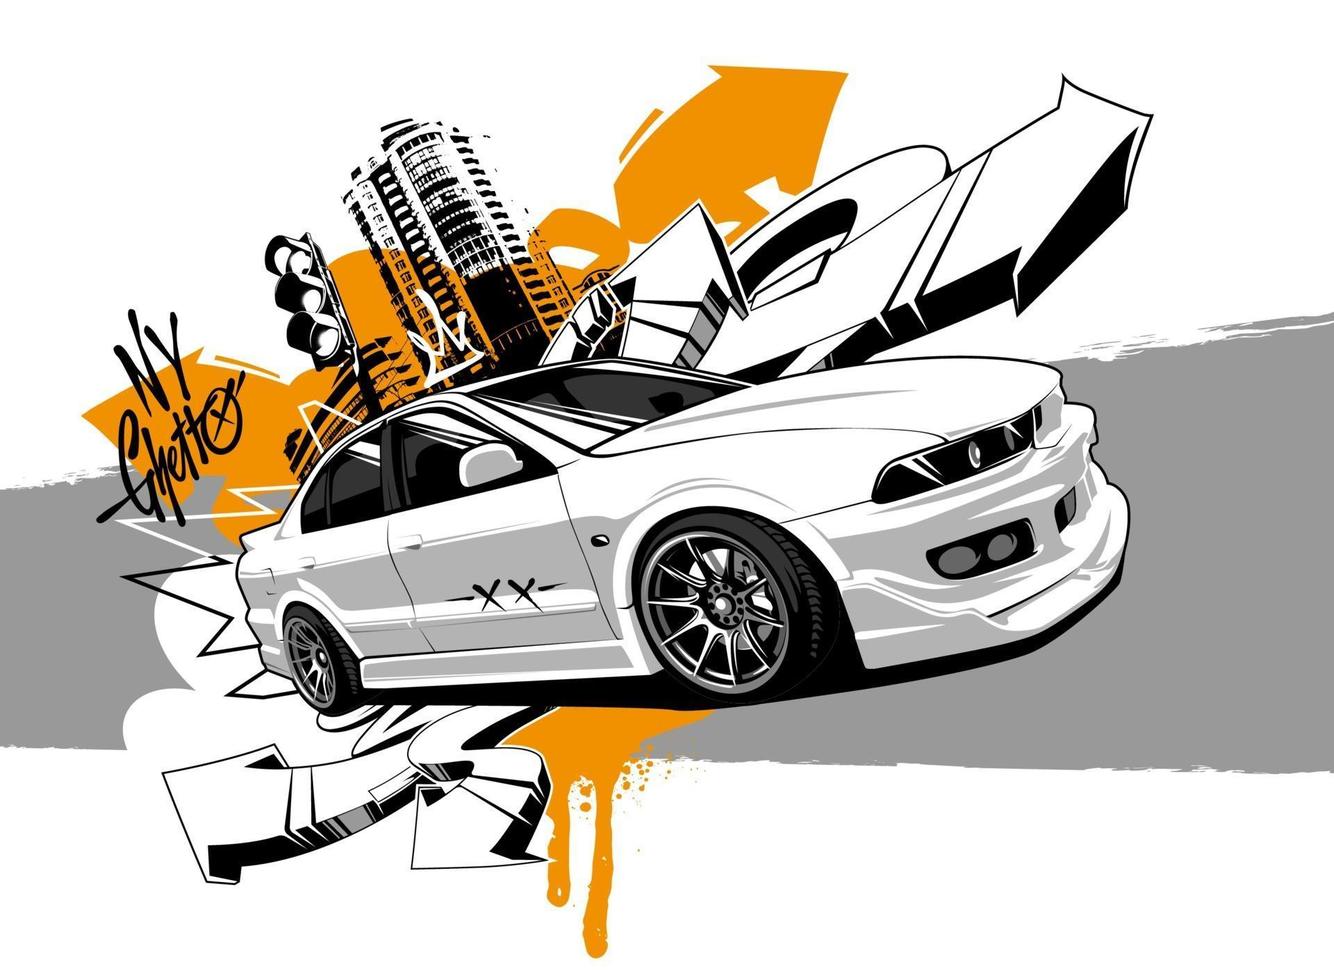 Racing Car Graffiti Abstract Art vector